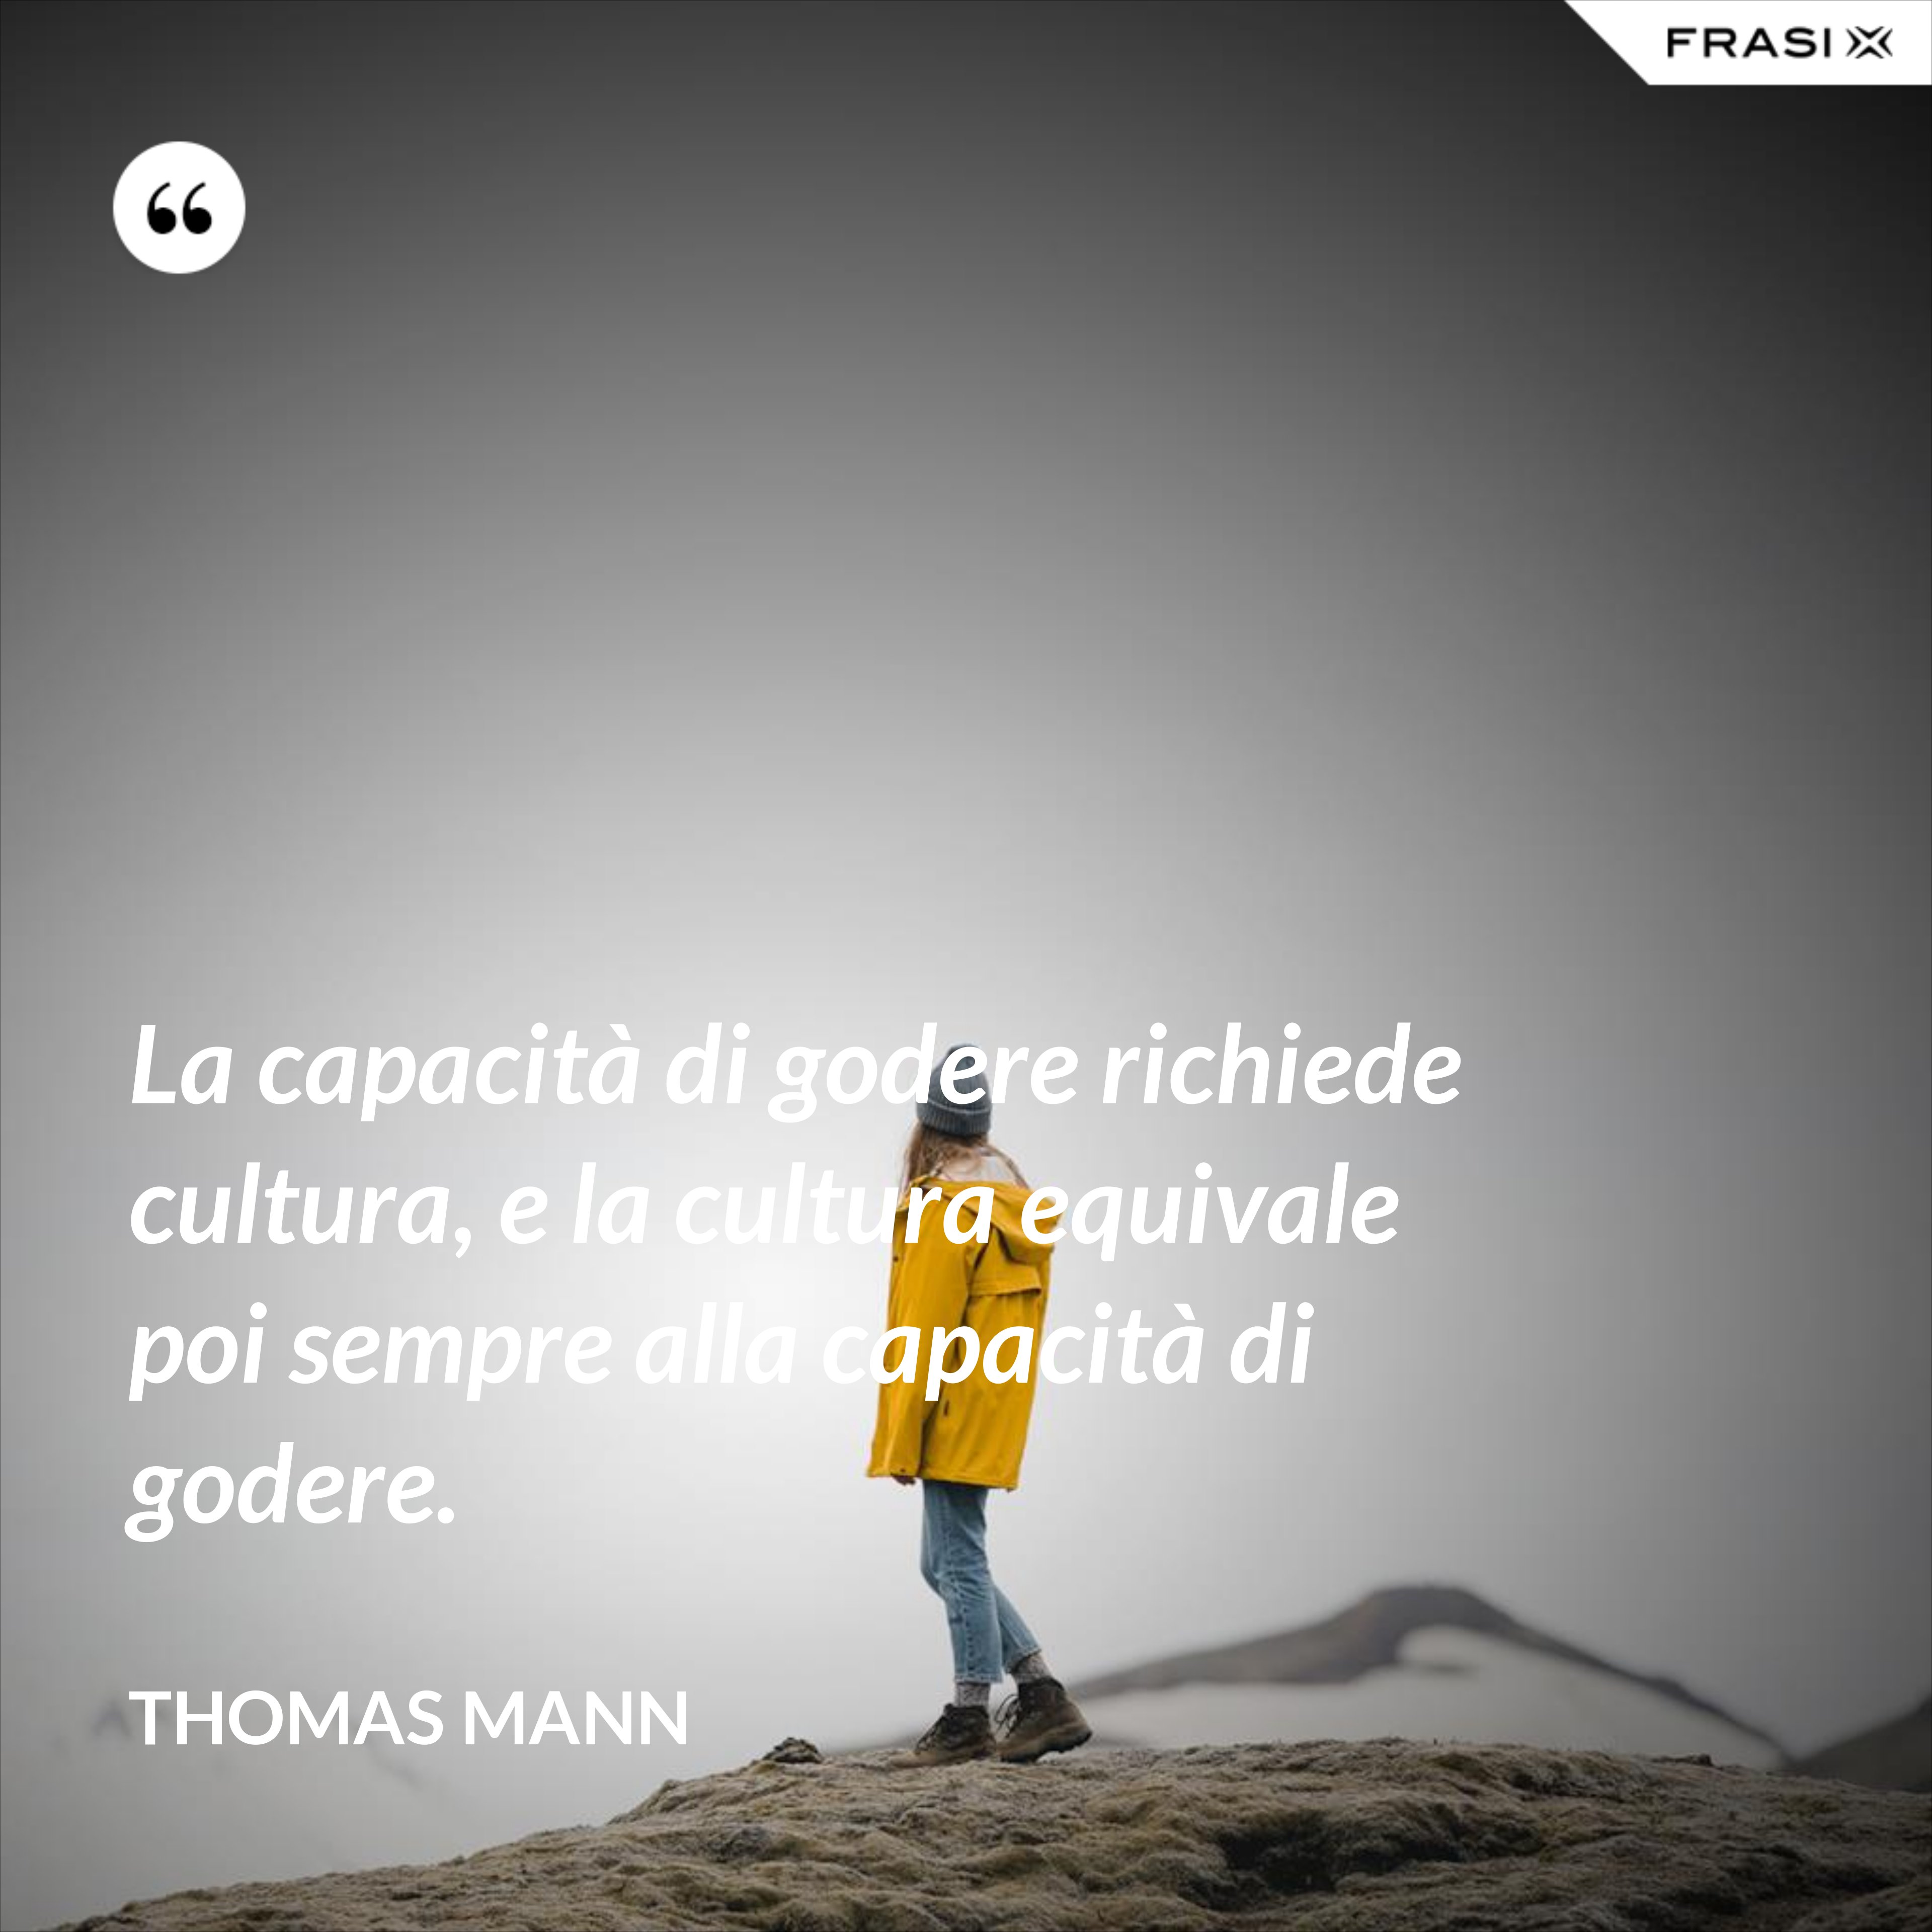 La capacità di godere richiede cultura, e la cultura equivale poi sempre alla capacità di godere. - Thomas Mann